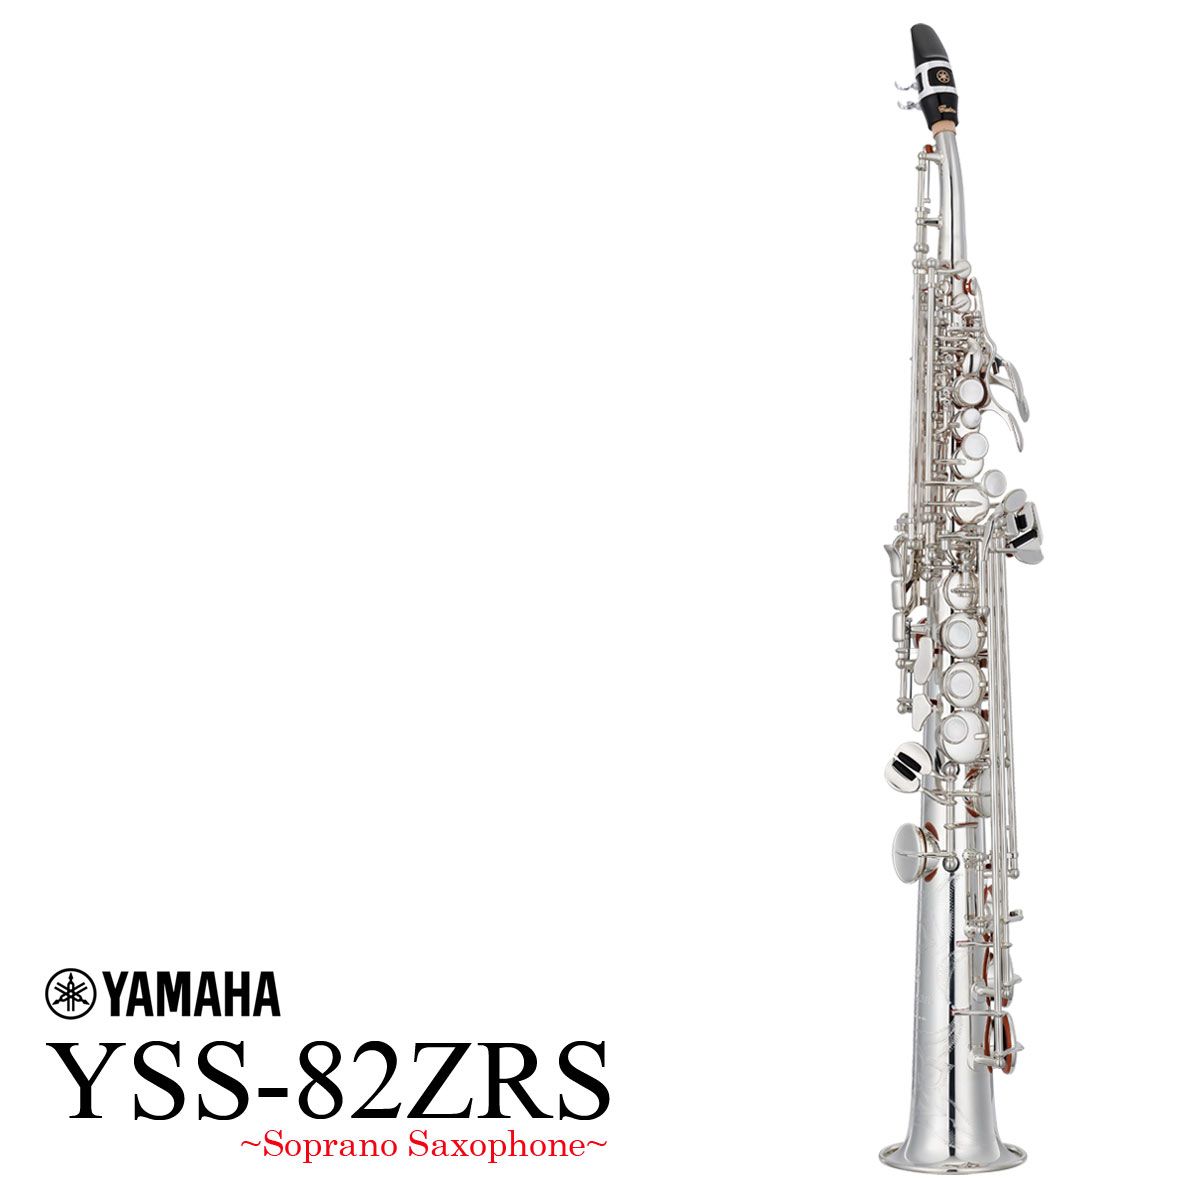 YAMAHA / YSS-82ZRS ヤマハ ソプラノサックス 銀メッキ カーブドネック